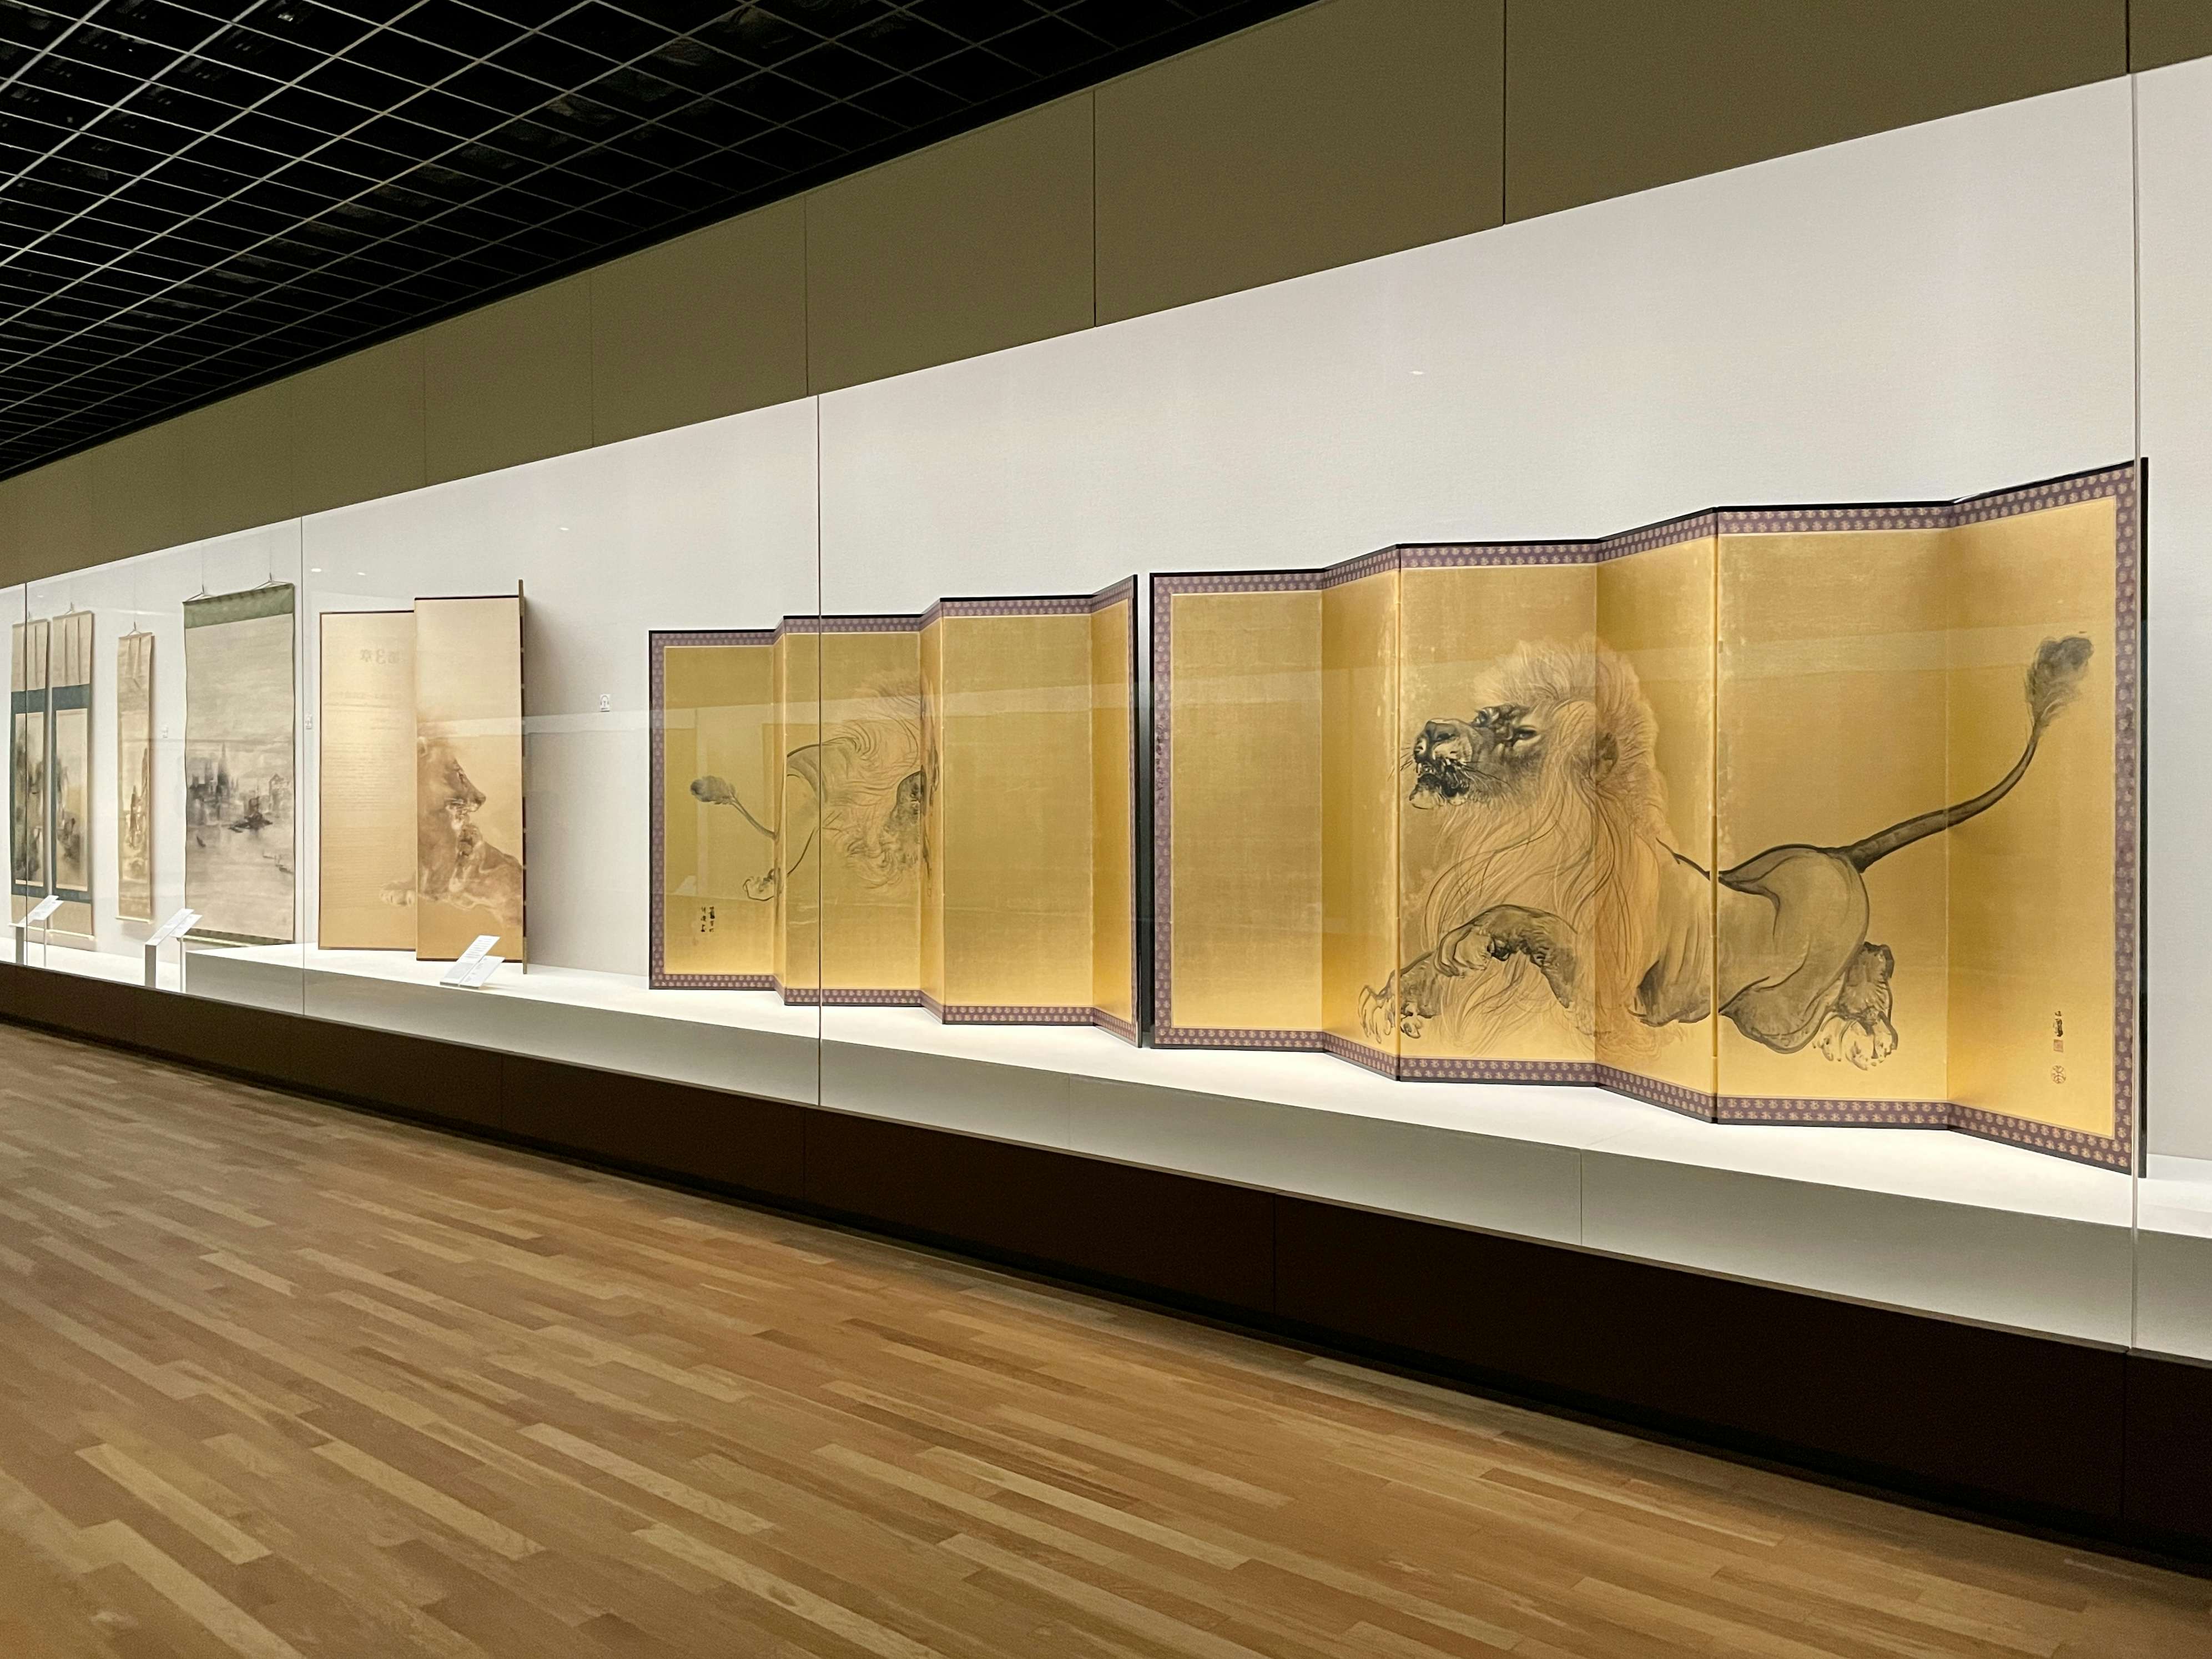 竹内栖鳳が探求し続けた新たな日本画とは。京都市京セラ美術館でその 